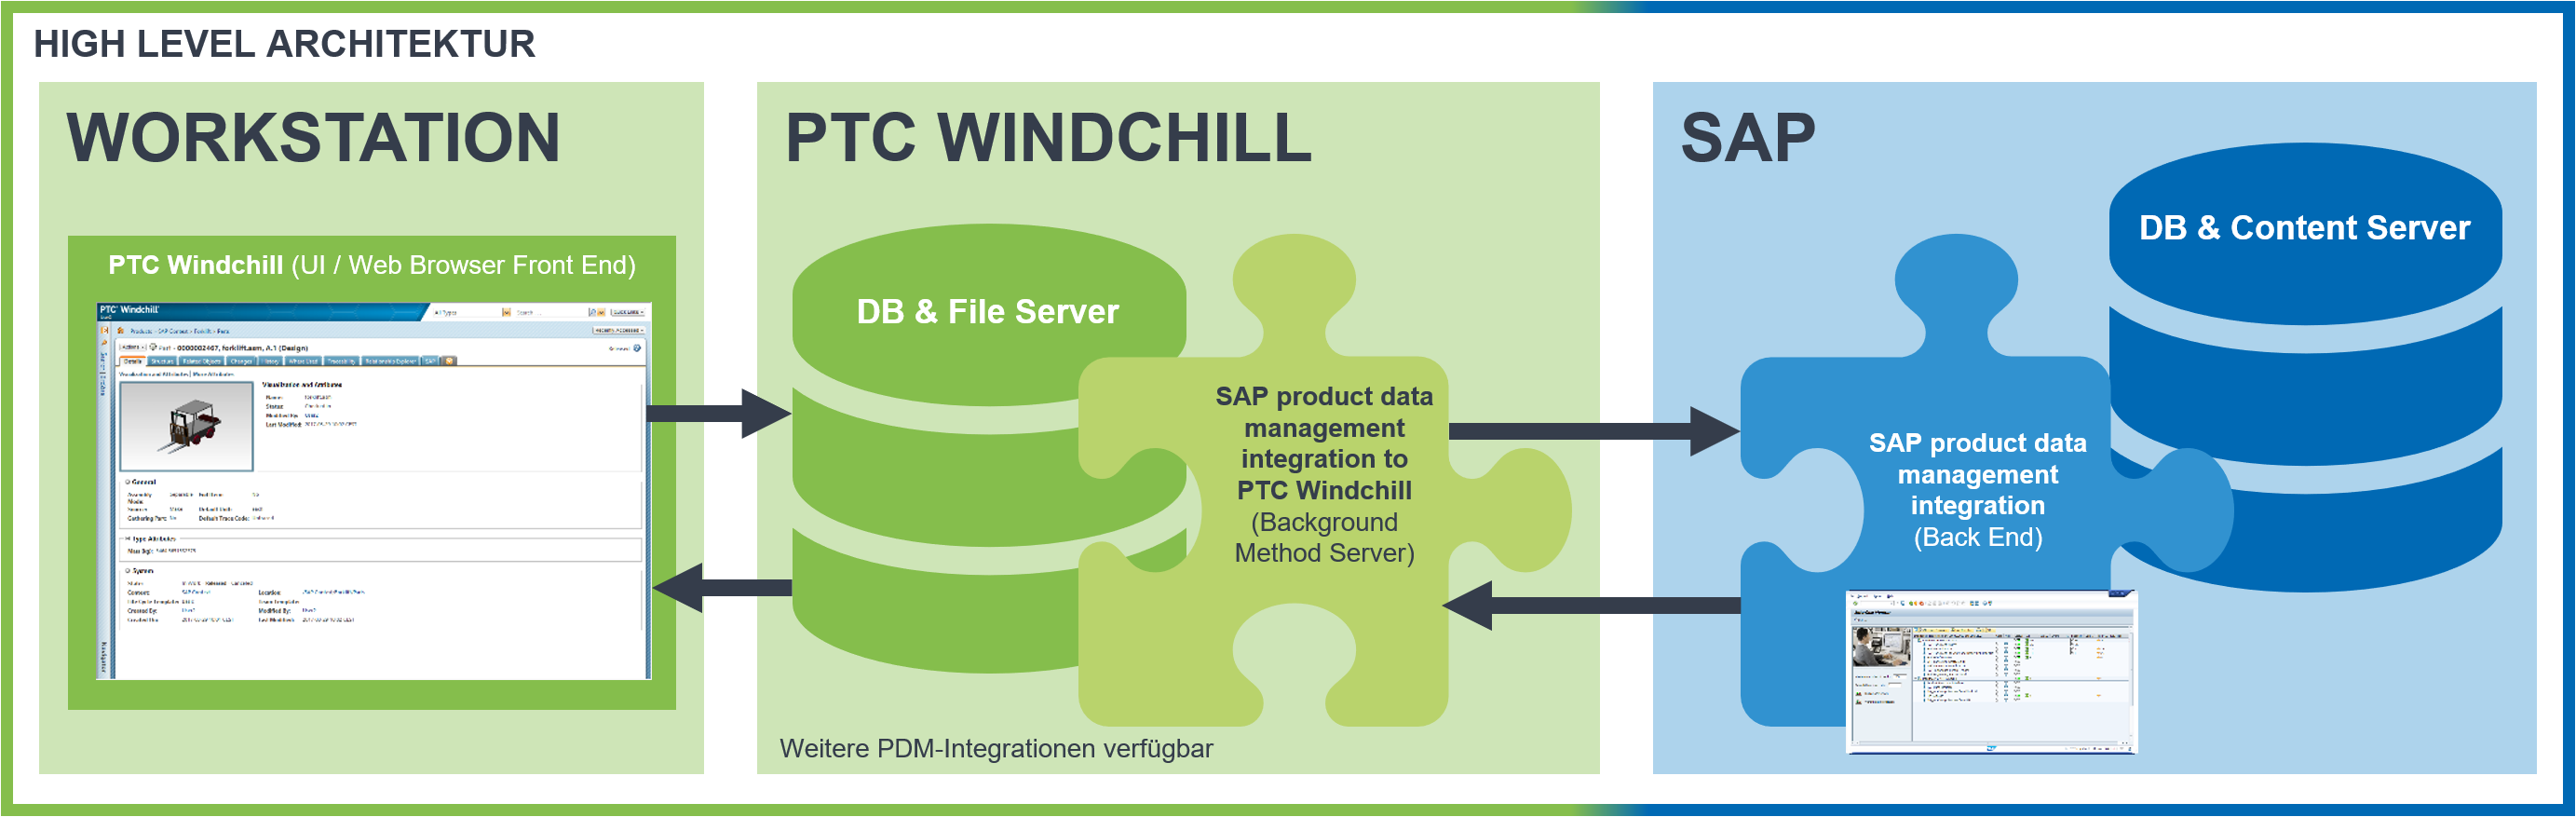 Grafik zur High-Level Architektur der SAP PDM integration to PTC Windchill